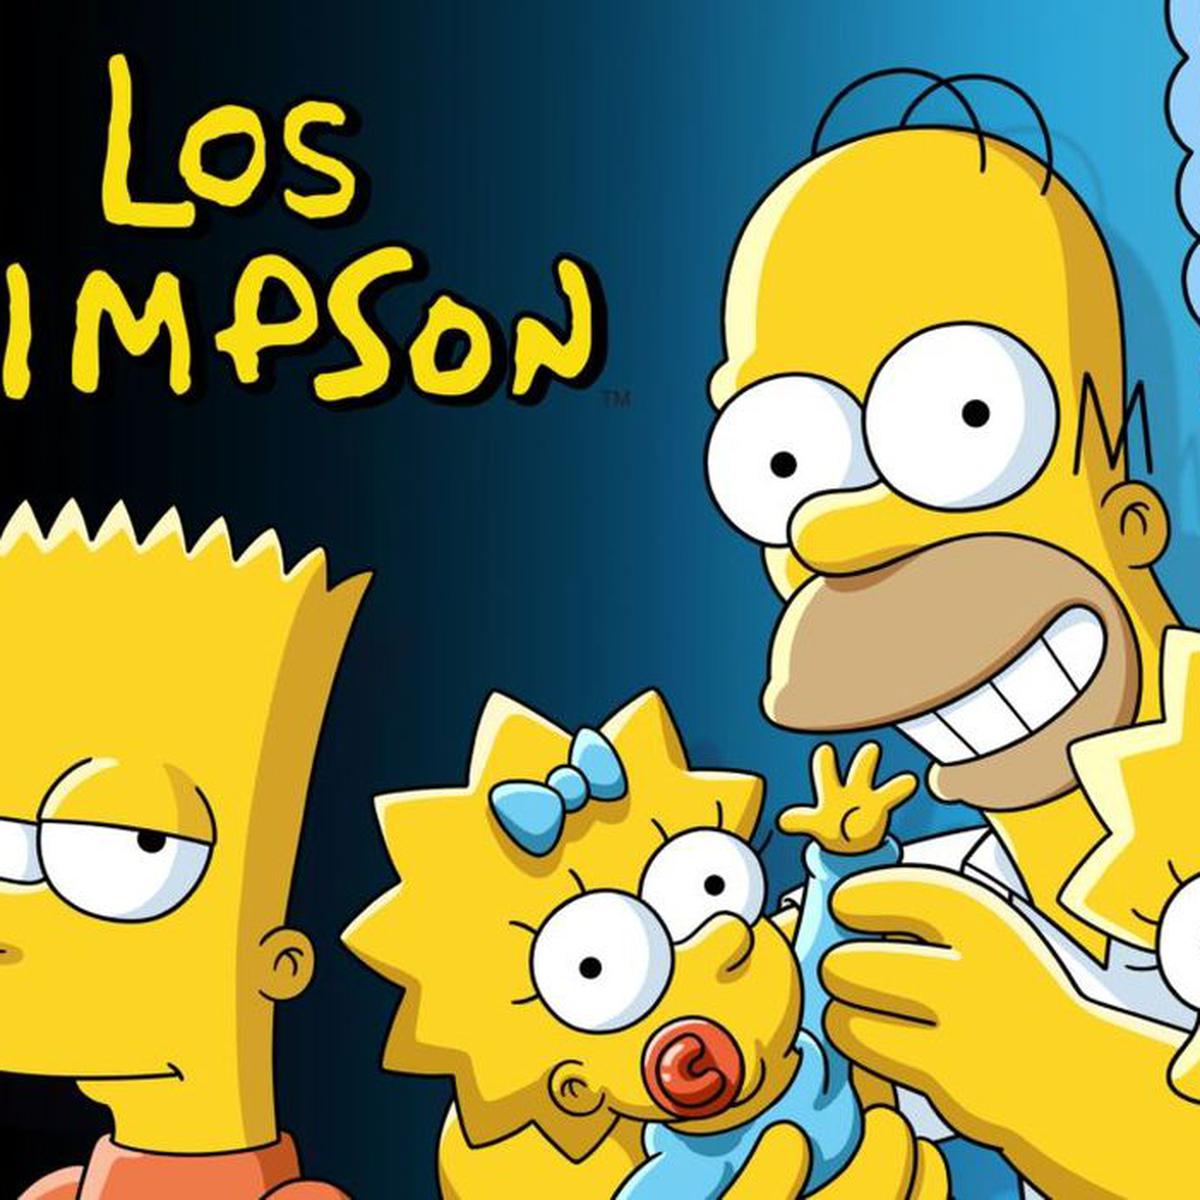 Los Simpson': Sus primeros episodios no son perfectos